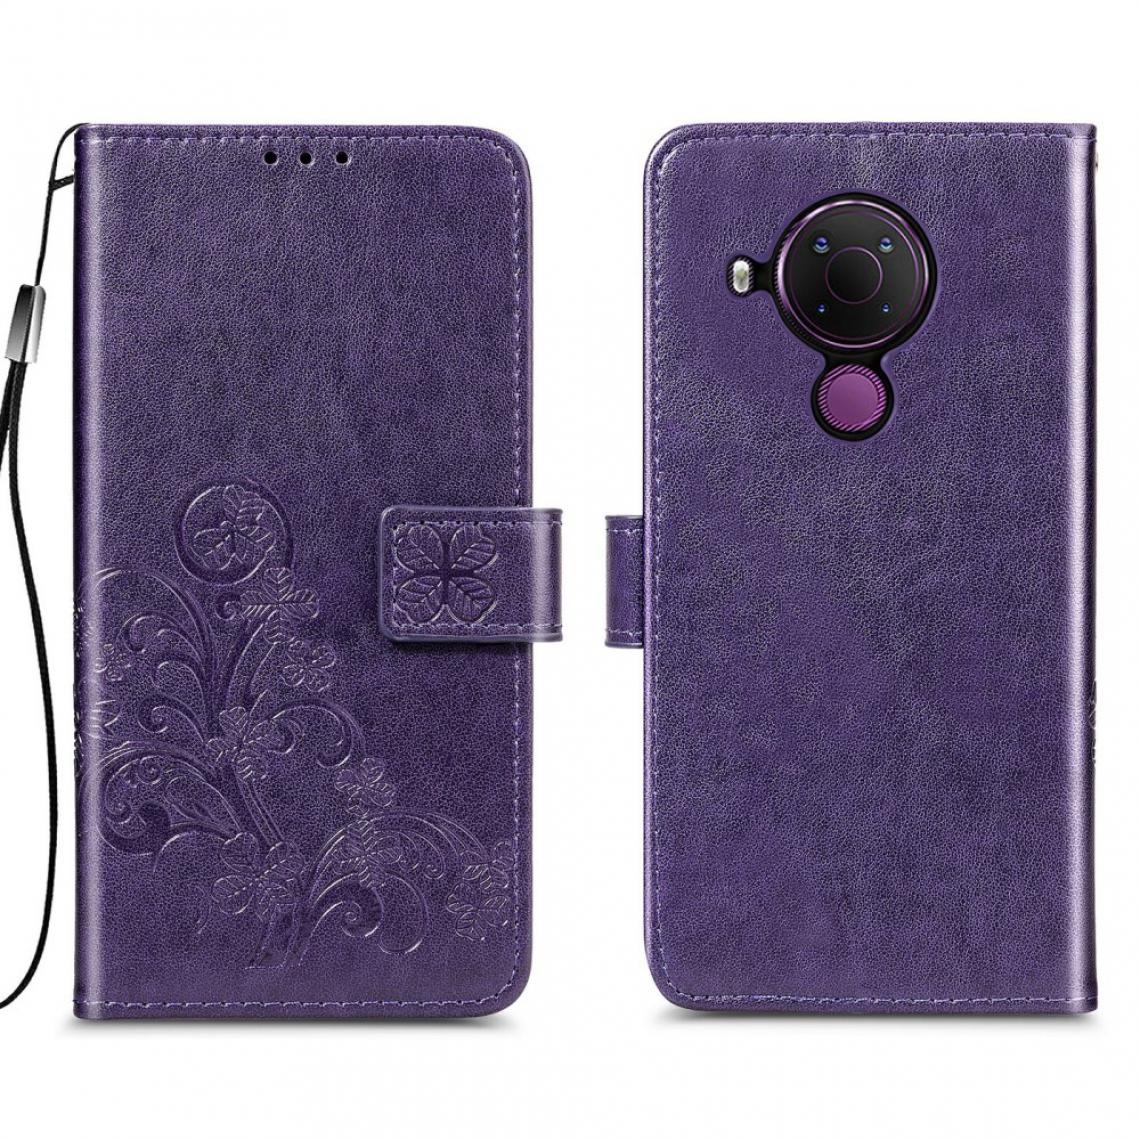 Other - Etui en PU Trèfle à quatre feuilles imprimé violet pour votre Nokia 5.4 - Coque, étui smartphone